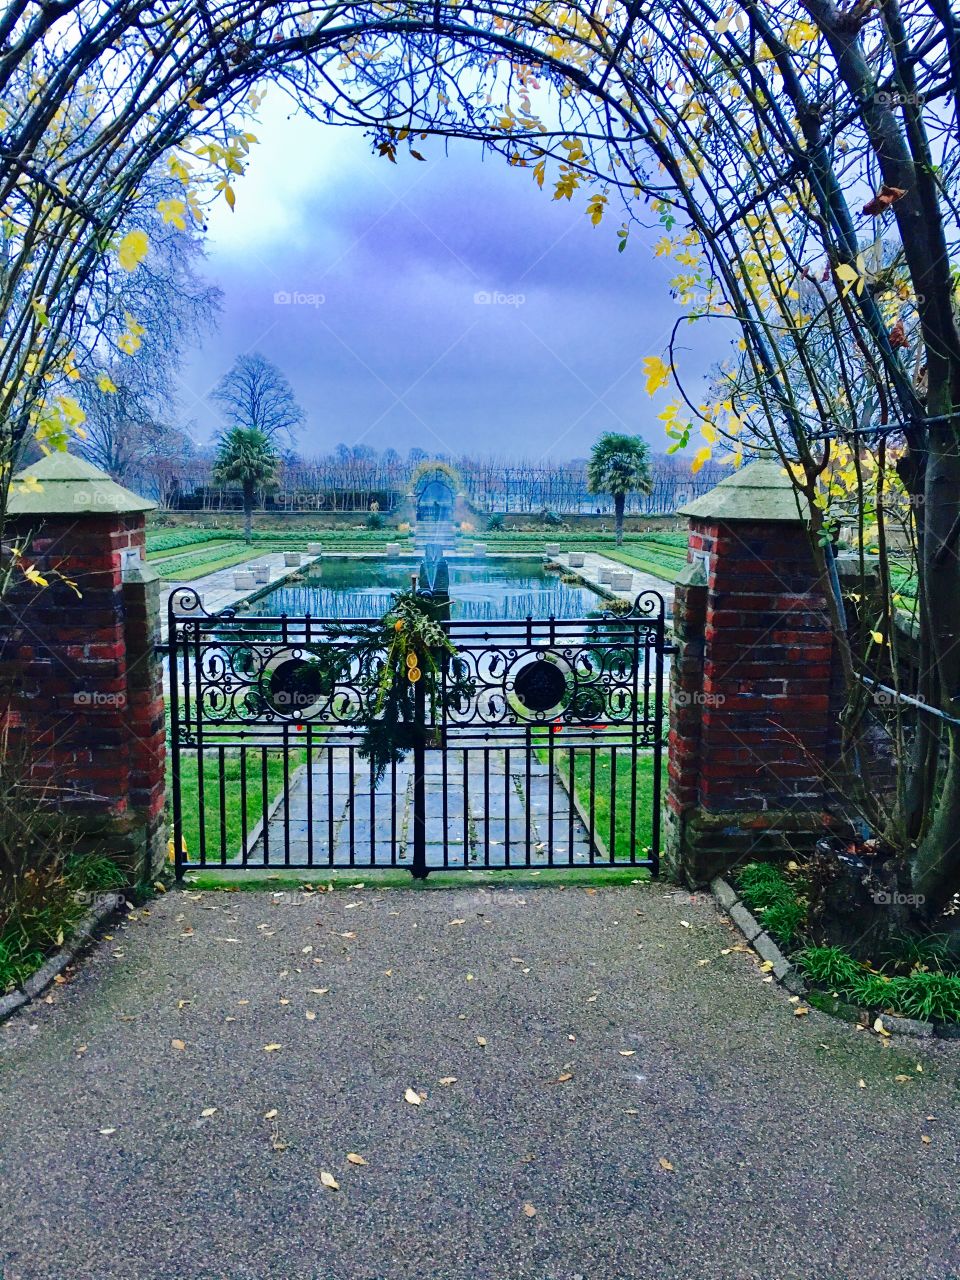 British gardens